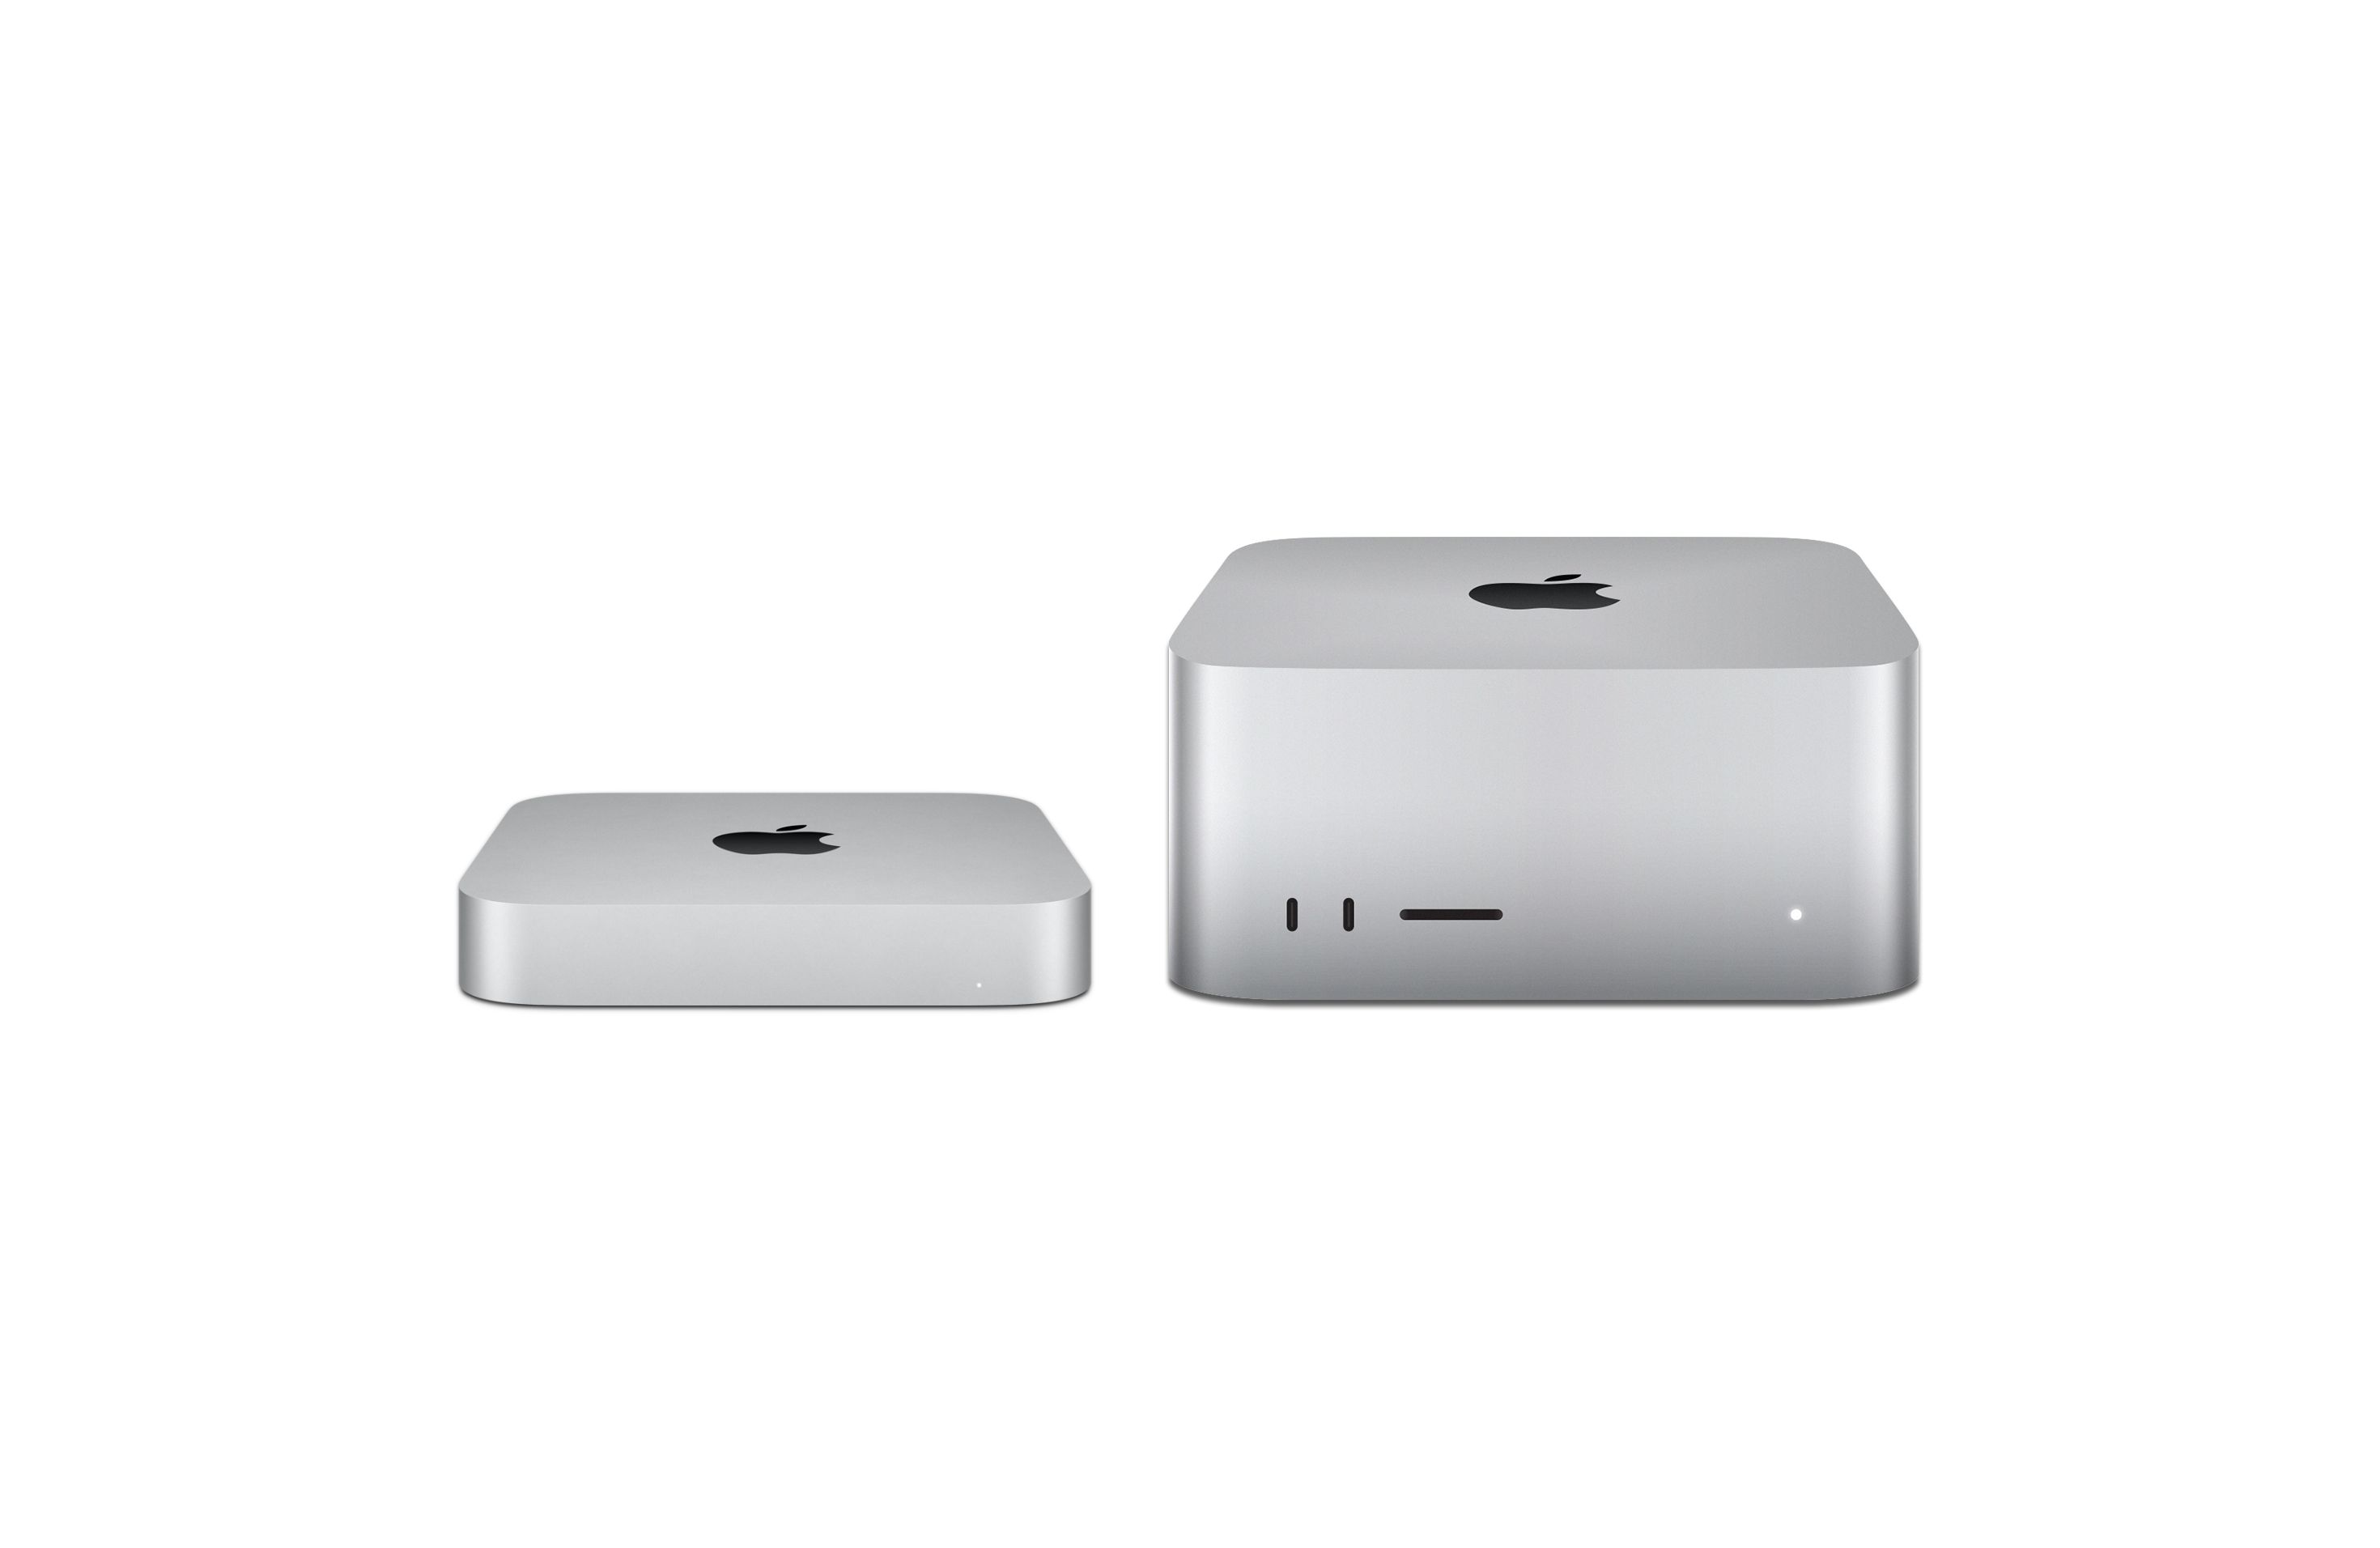 Comparámos os mais poderosos desktops da Apple: Mac Studio vs Mac mini M2 Pro